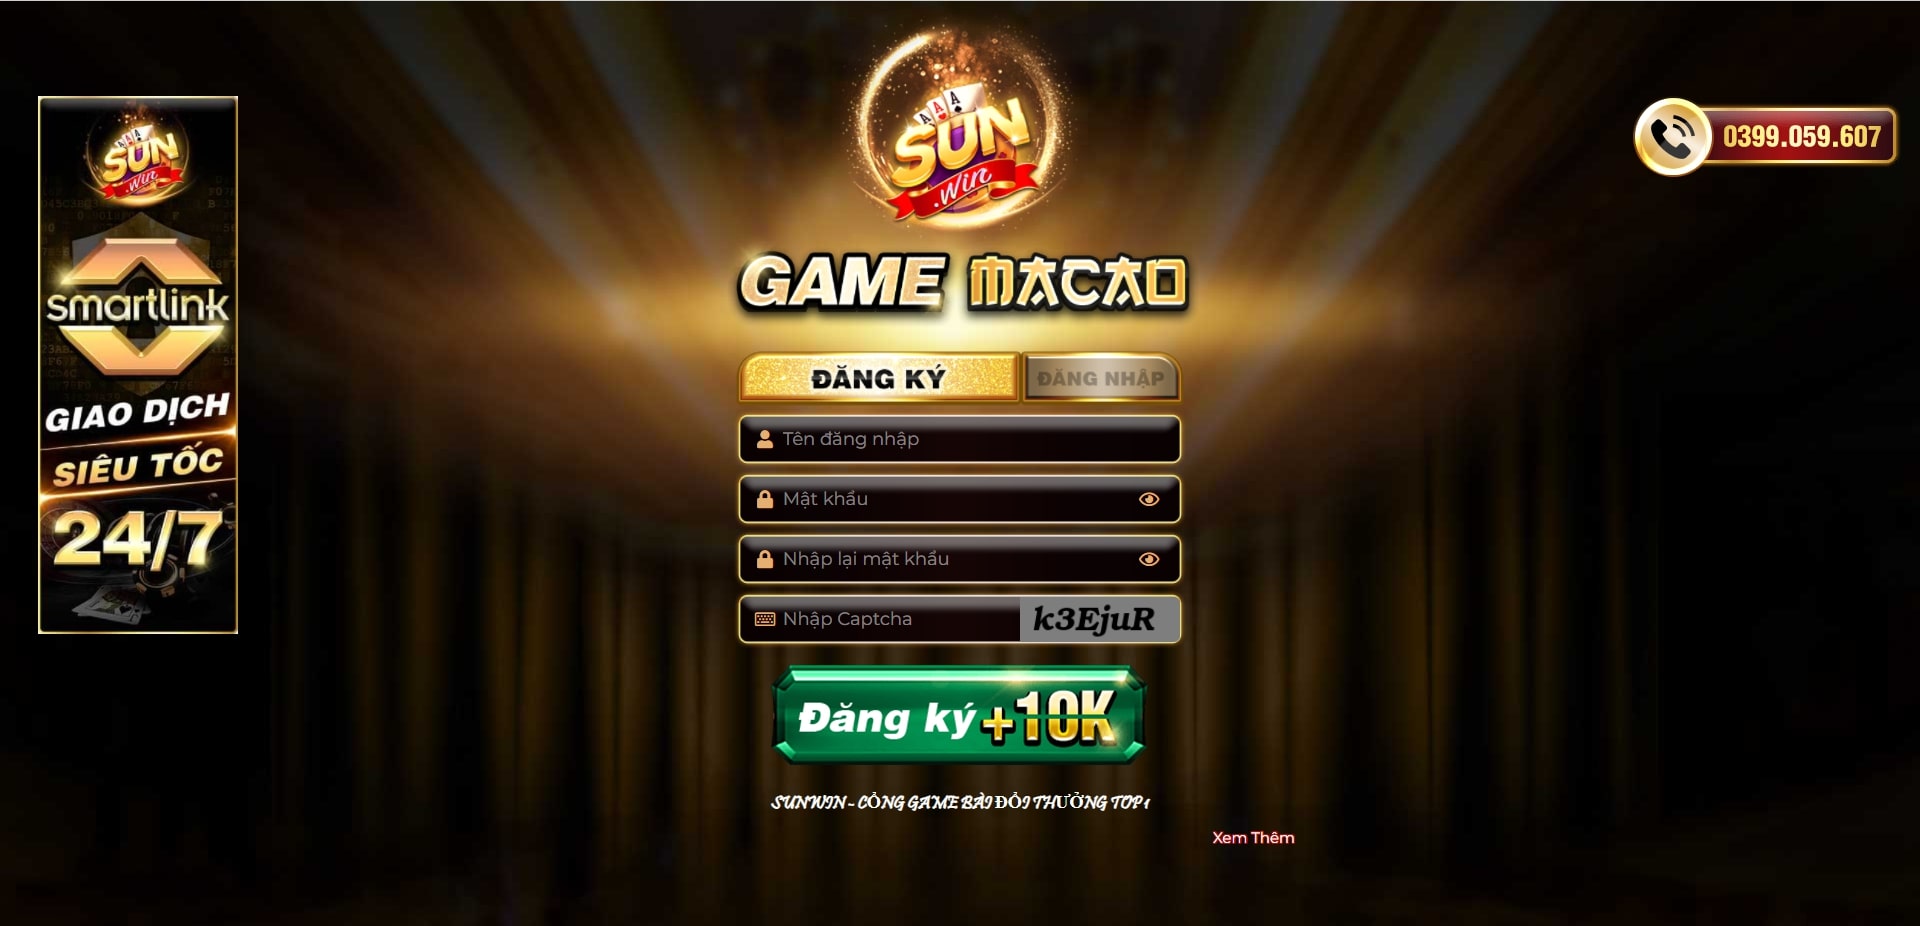 Cách đăng ký Sunwin thành công - Chơi game nhanh chóng - Gamesunwin.blog